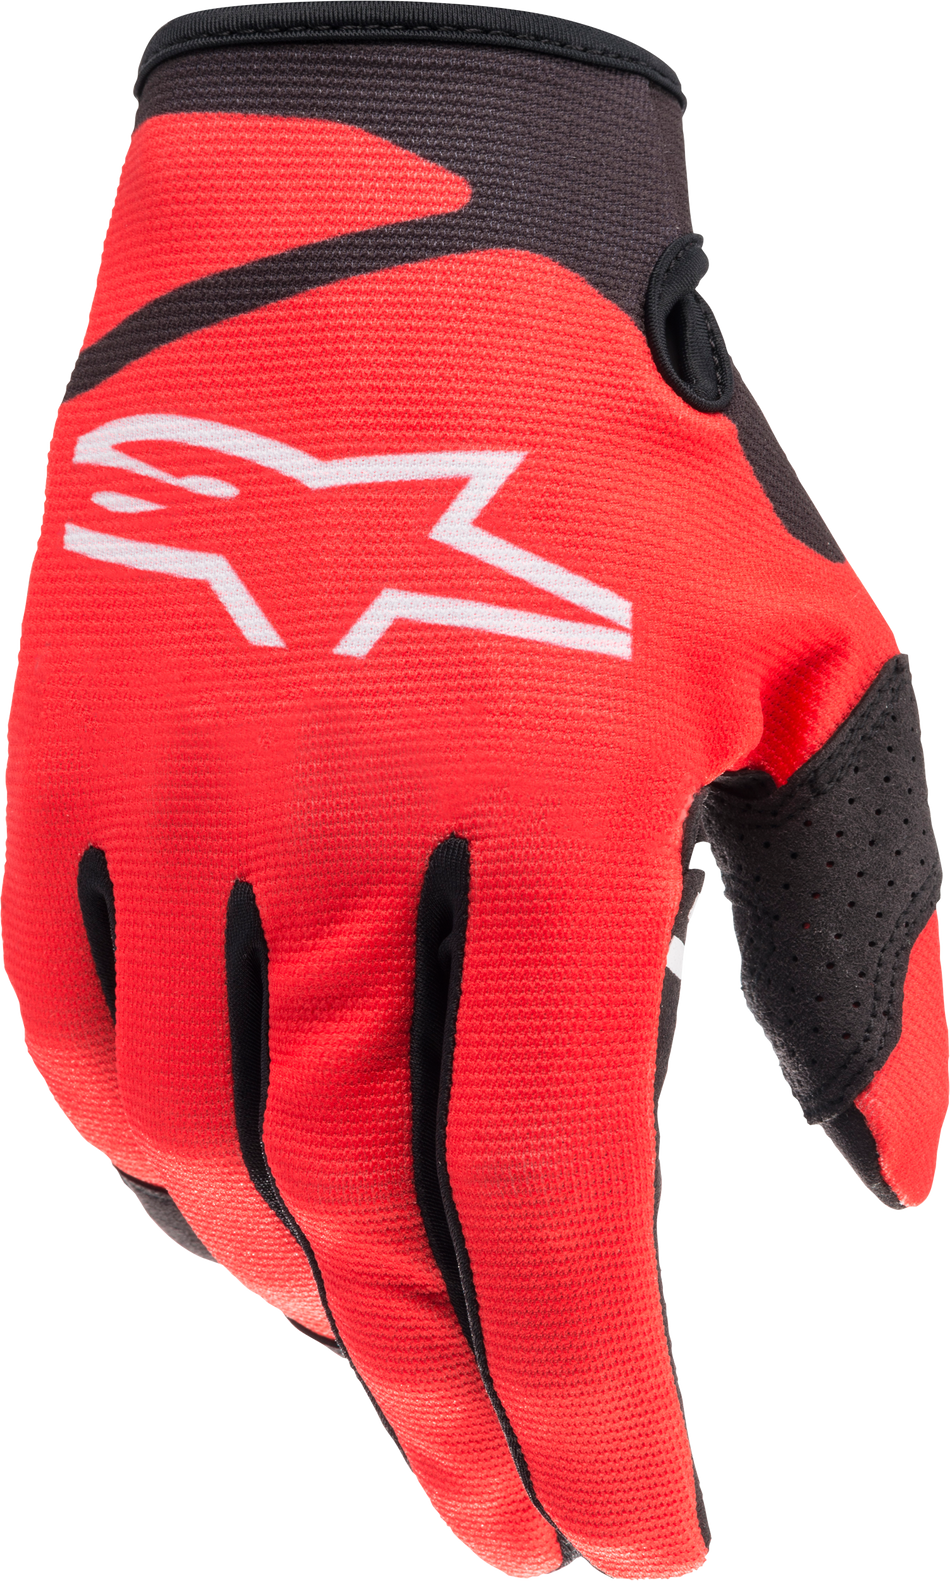 ALPINESTARS Youth Radar Gloves Bright Red/Black Lg 3541822-3031-L